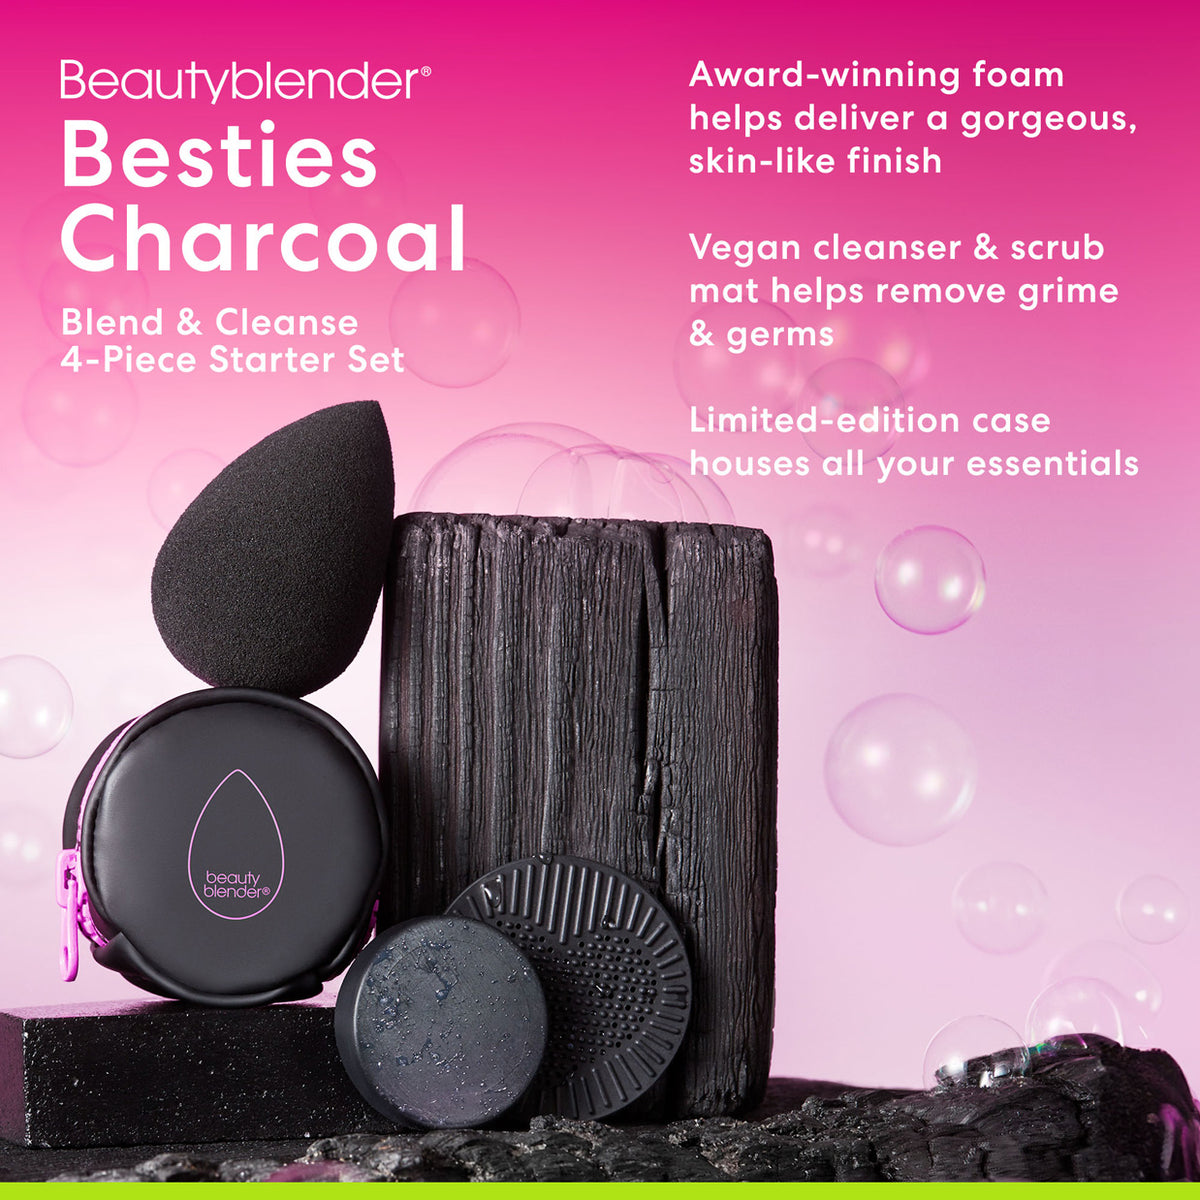 Besties Charcoal Blend & Cleanse 4-Piece Starter Set.